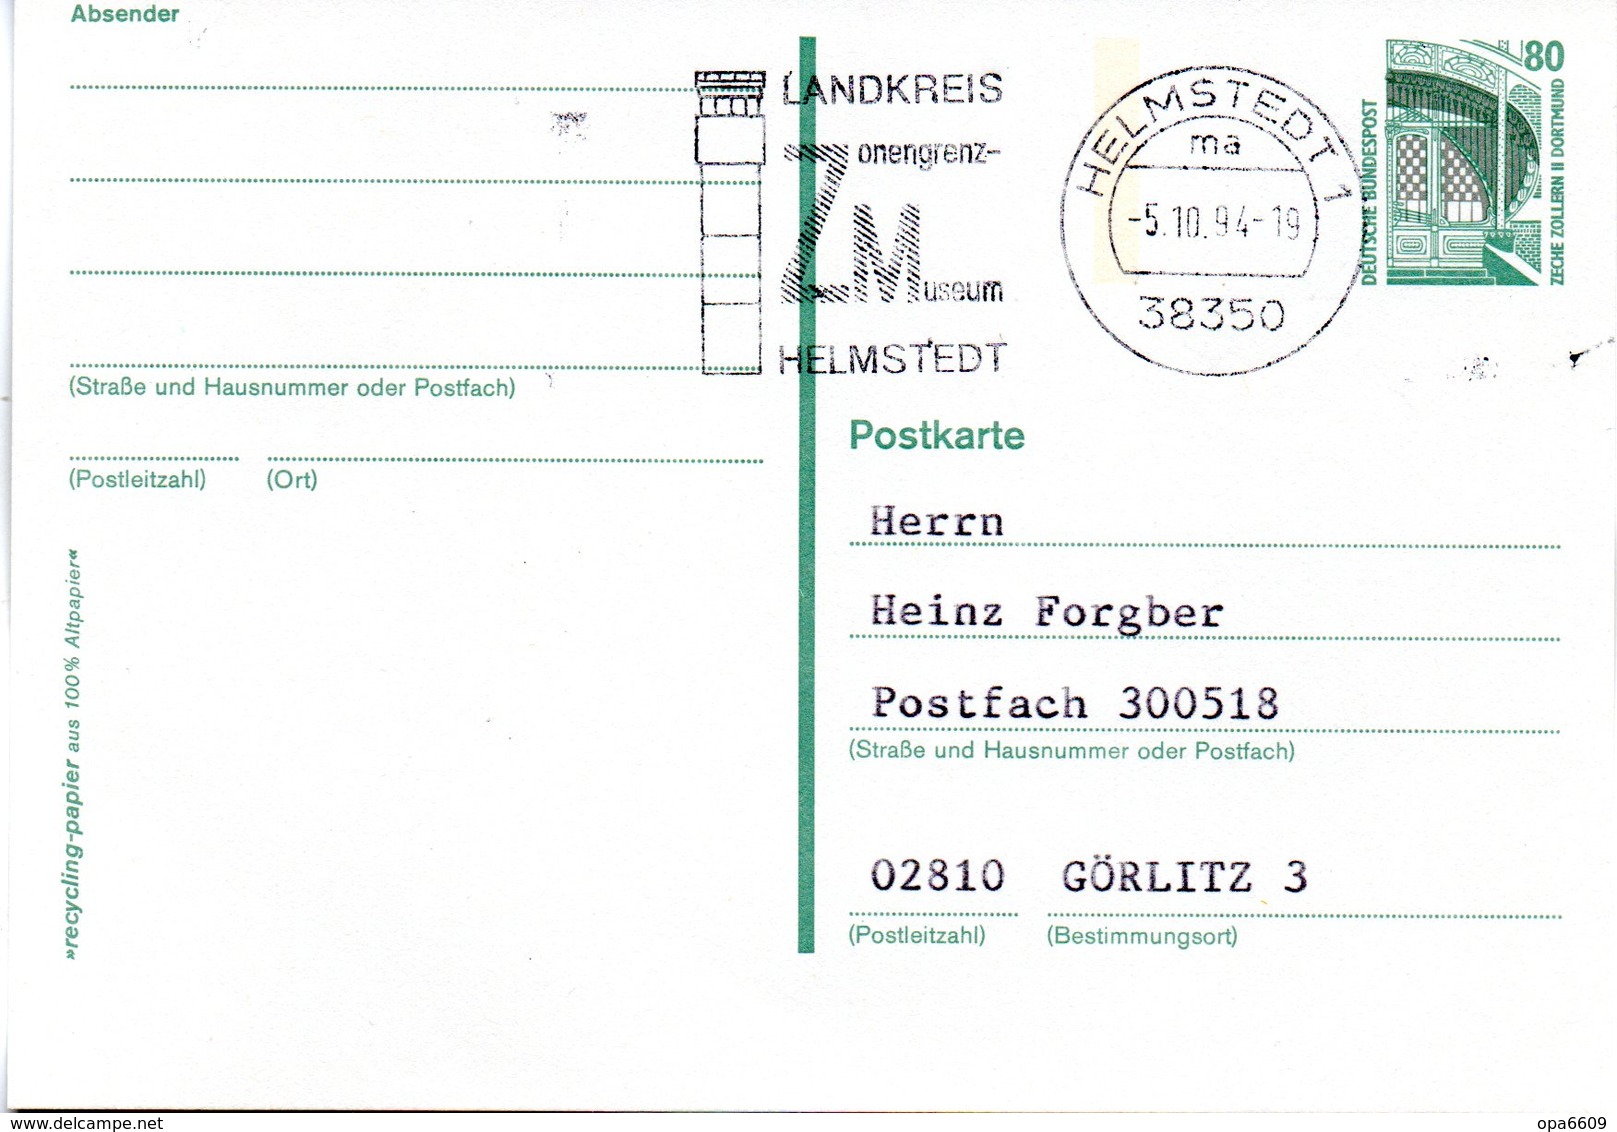 (Gm4) BRD Amtl. Ganzsachen-Postkarte P 150 WSt. "Sehenswürdigkeiten" 80(Pf) Grünblau, MWSt 5.10.94 HELMSTEDT 1 - Postkarten - Gebraucht